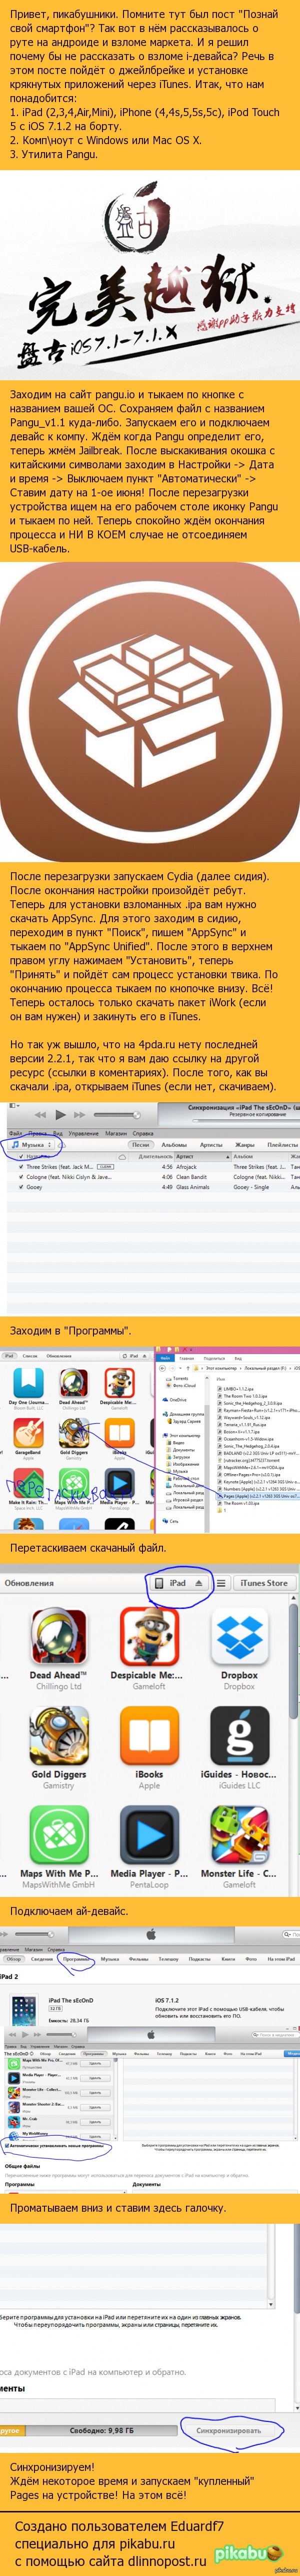    (iOS-)          App Store.